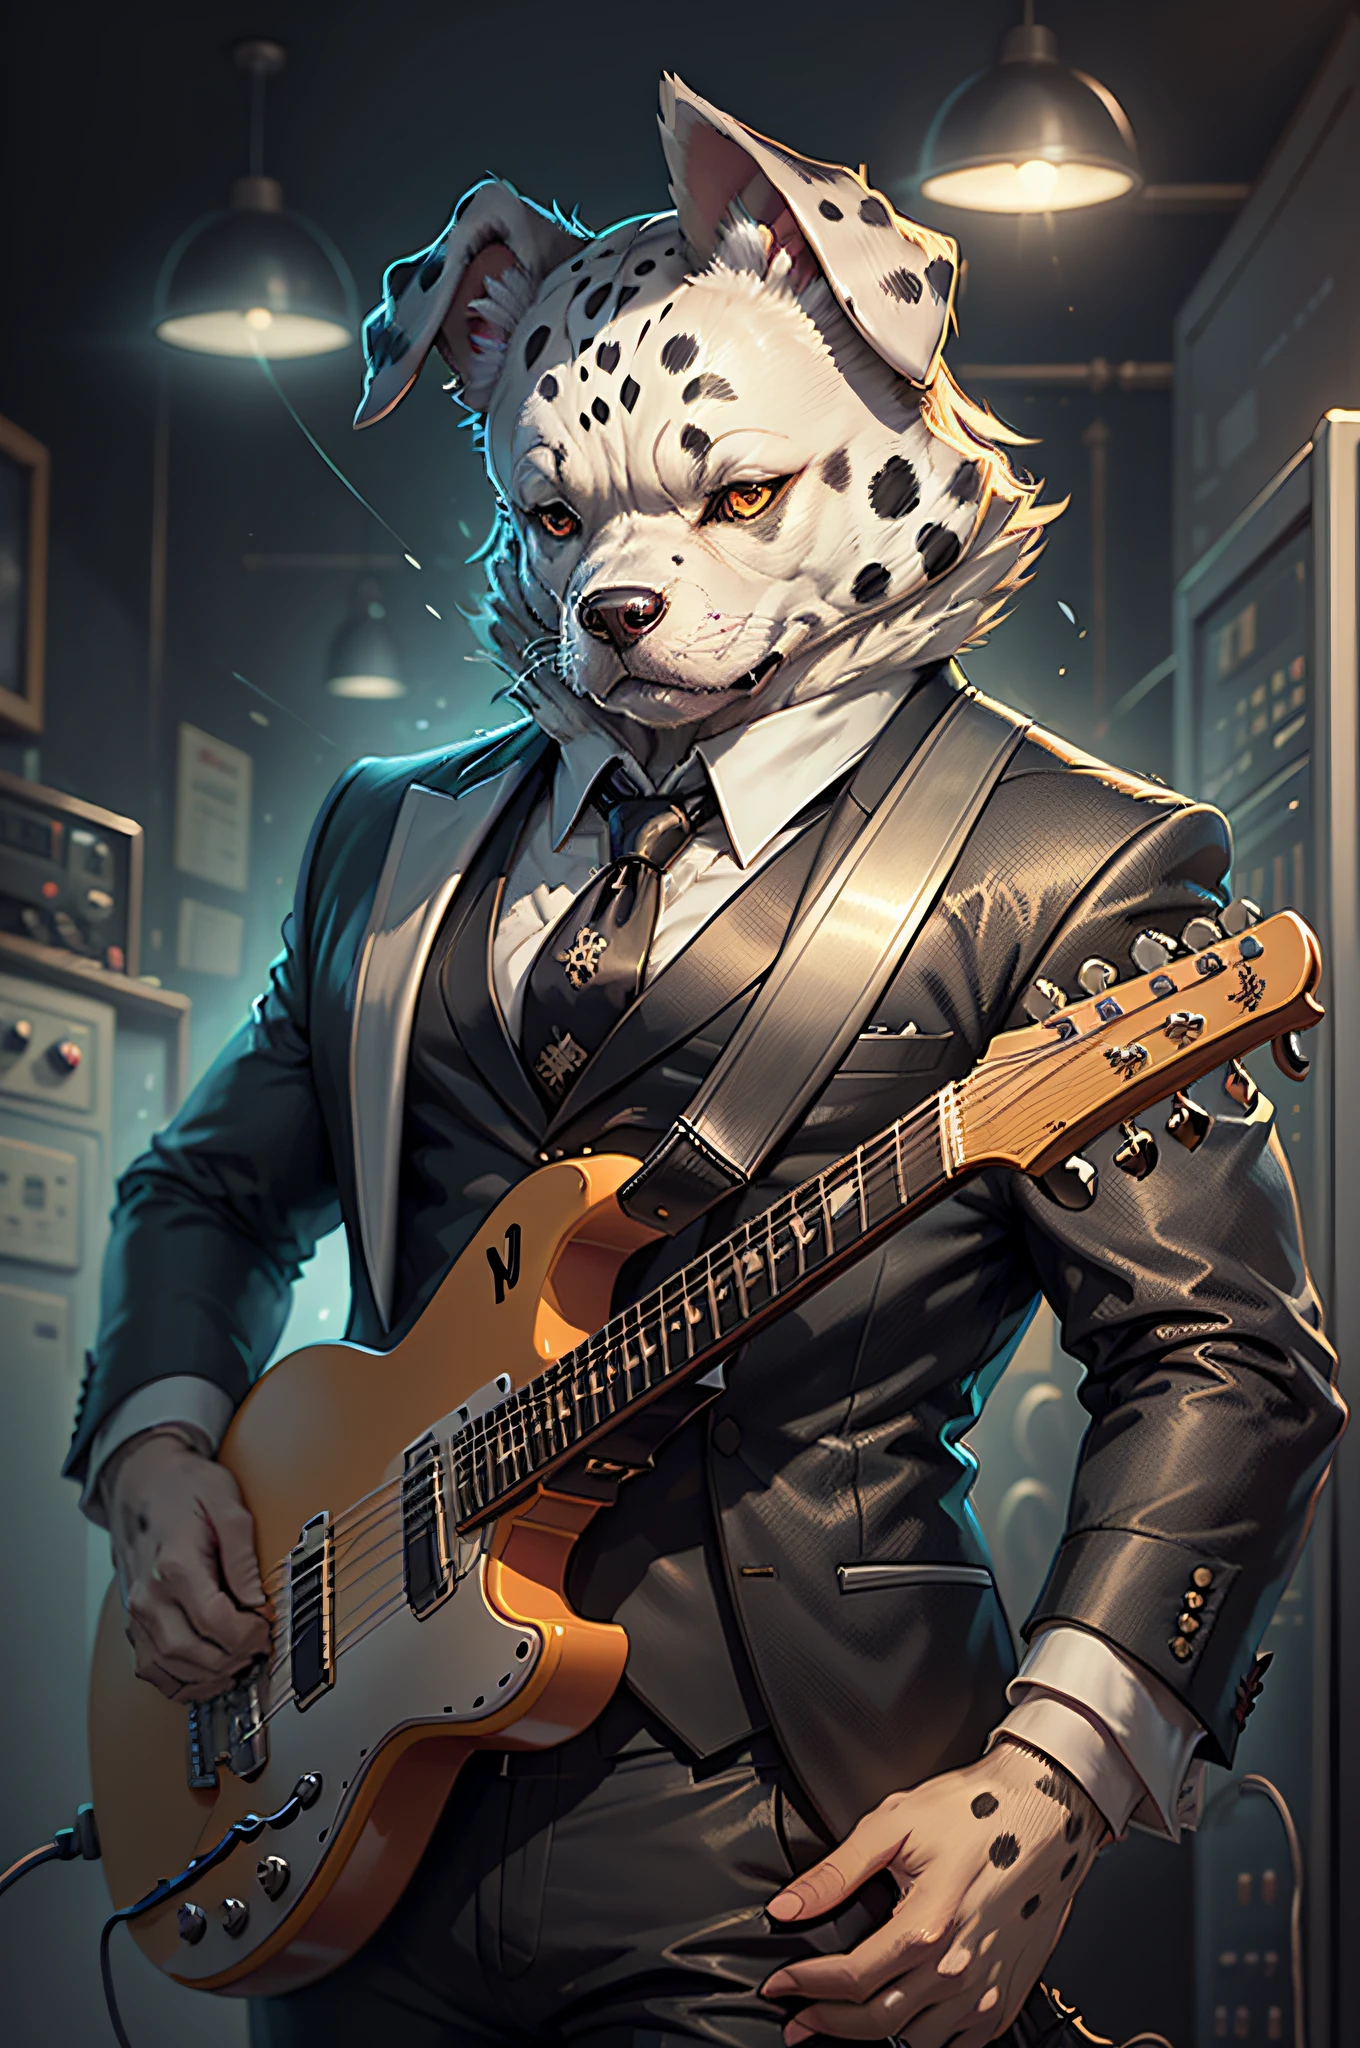 (검은 양복과 넥타이를 입은 남자)일렉트릭 기타를 연주하는 만화、의인화 된 귀가 늘어진 달마시안 개